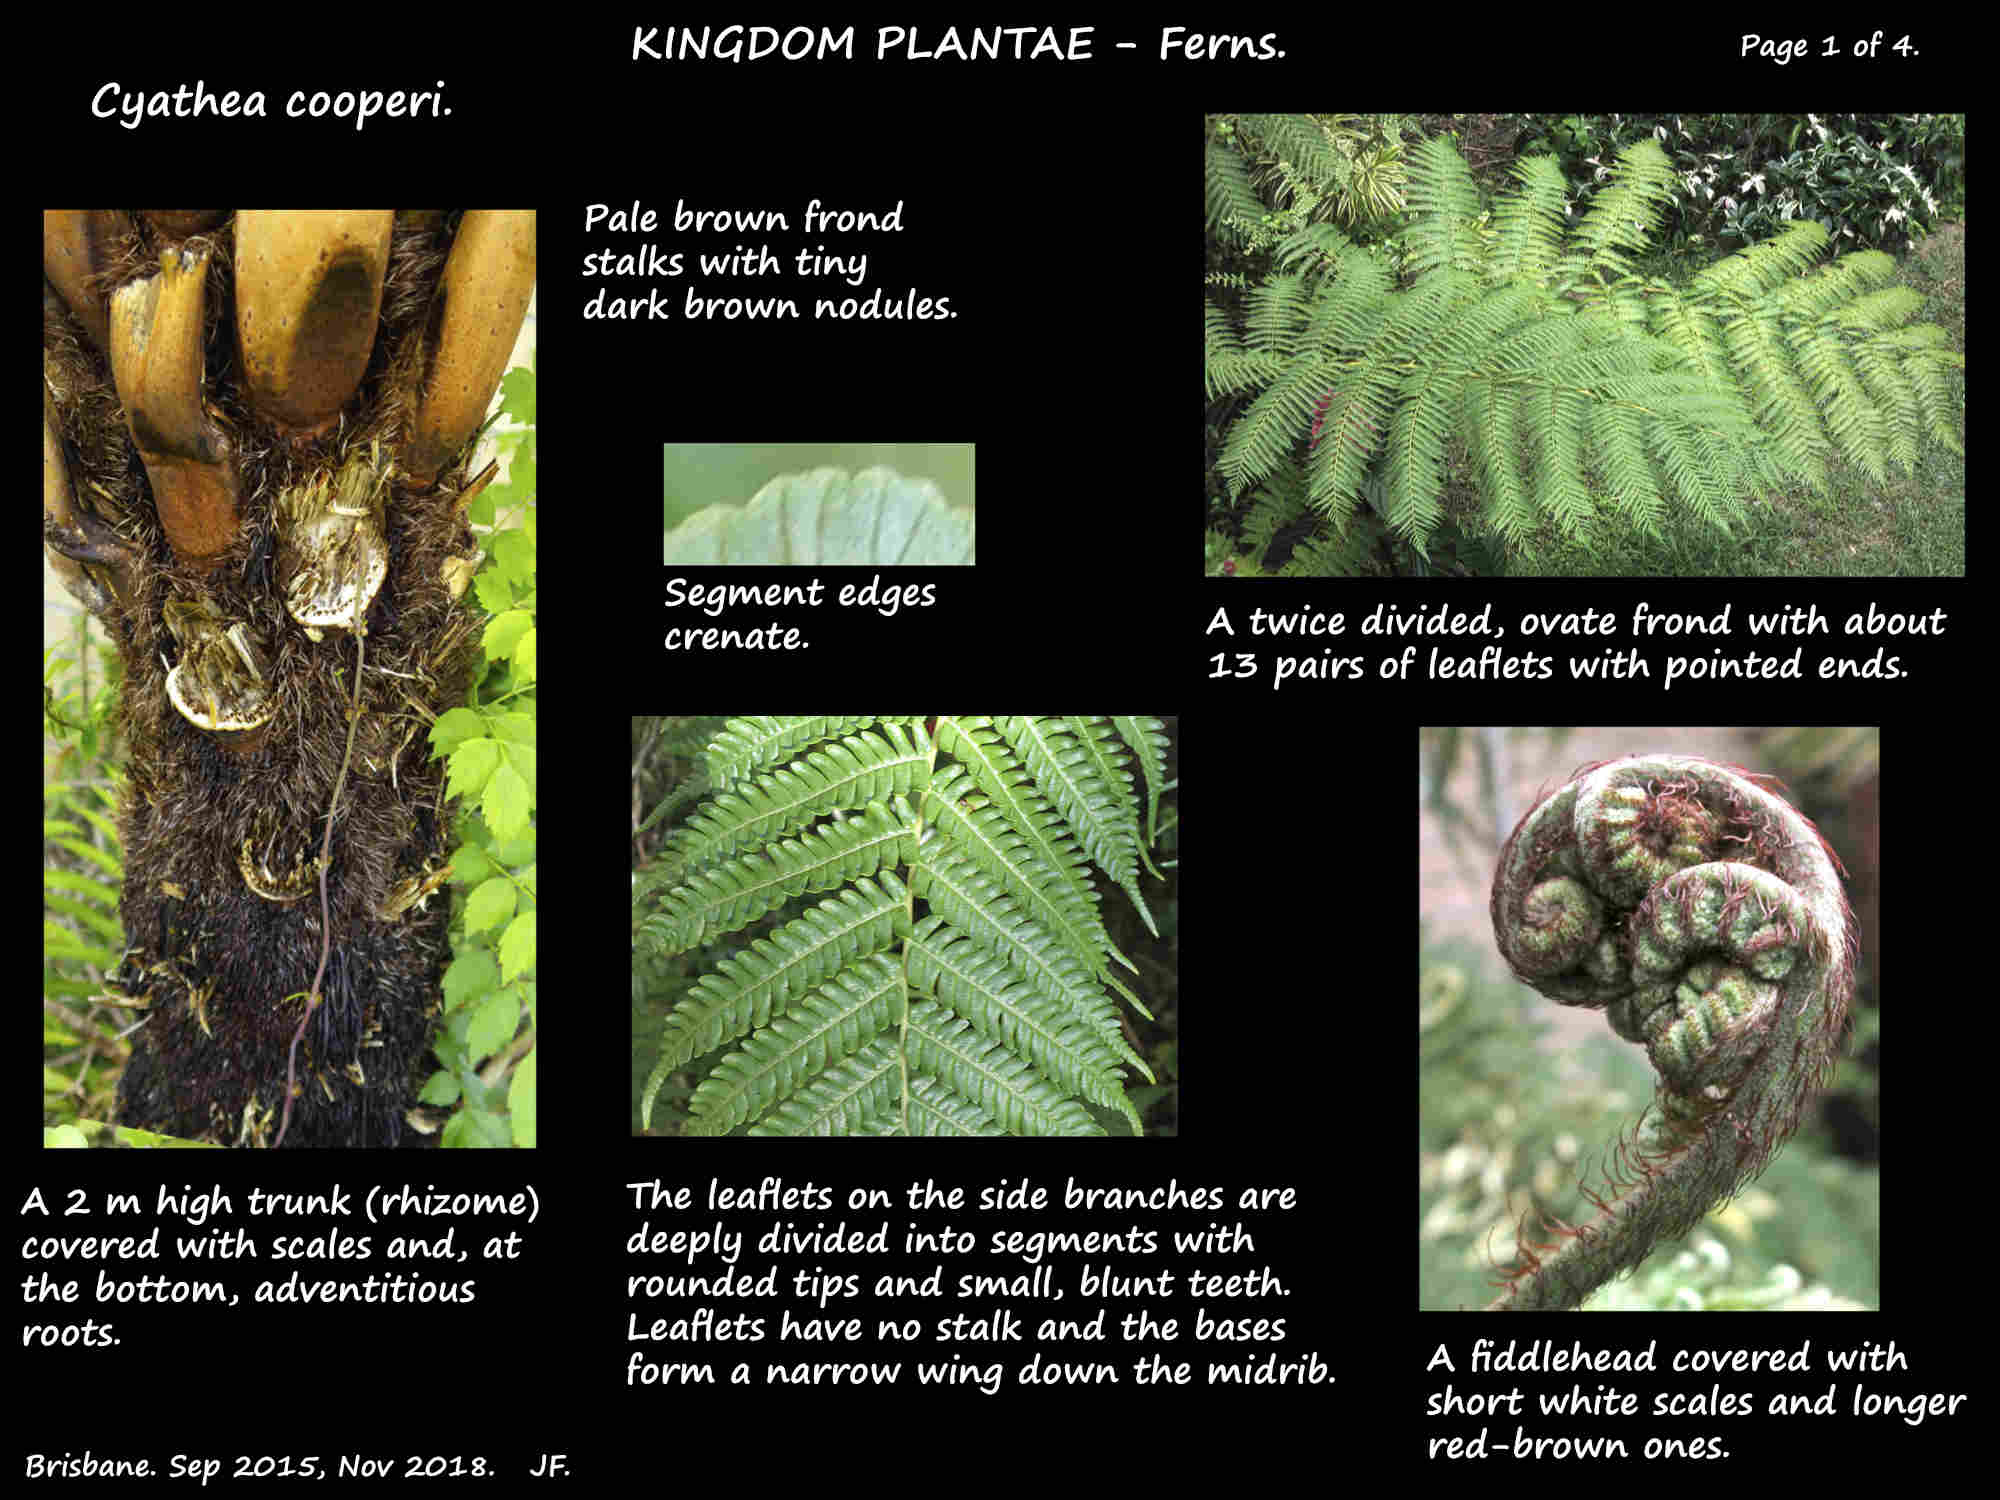 1 Scaly tree fern trunk, frond & fiddlehead